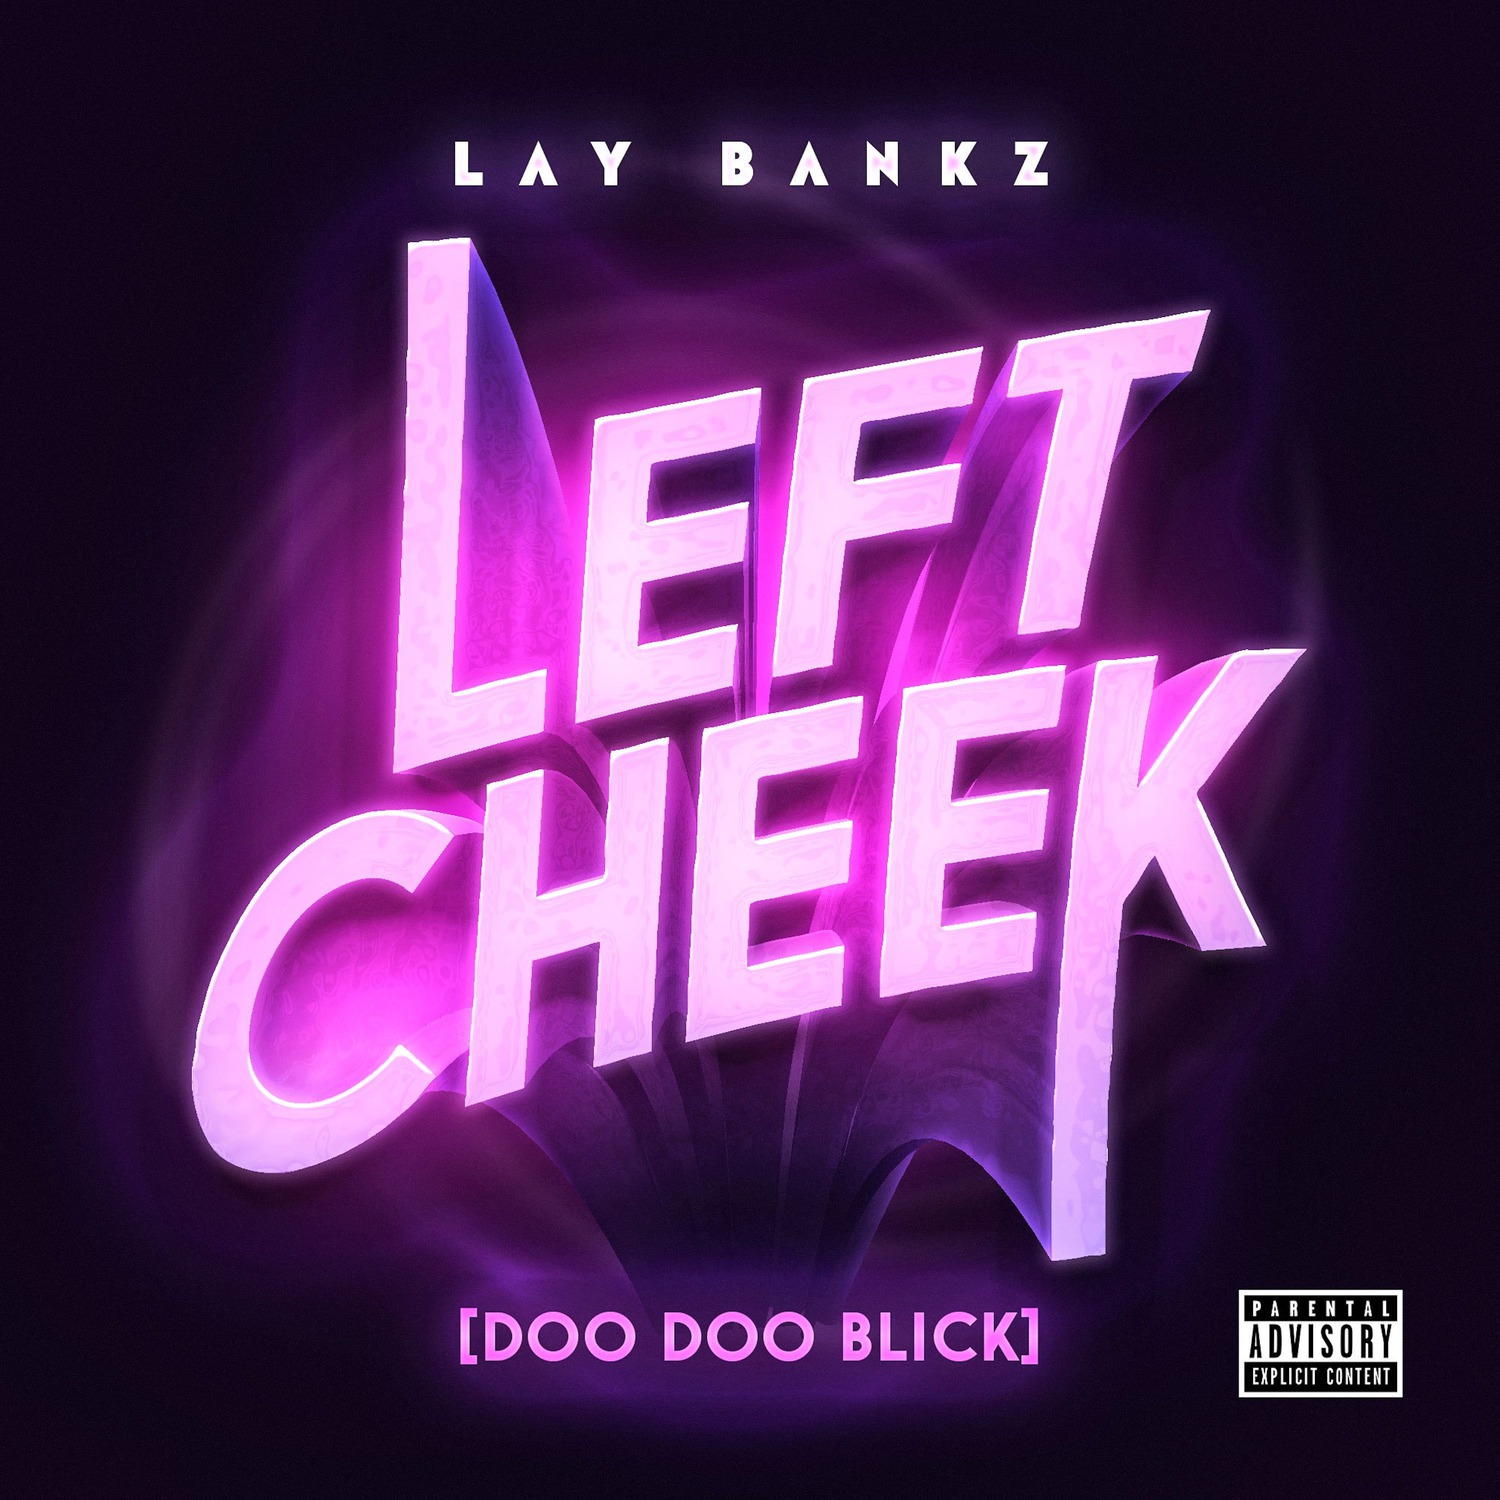 I-download Left Cheek (Doo Doo Blick)